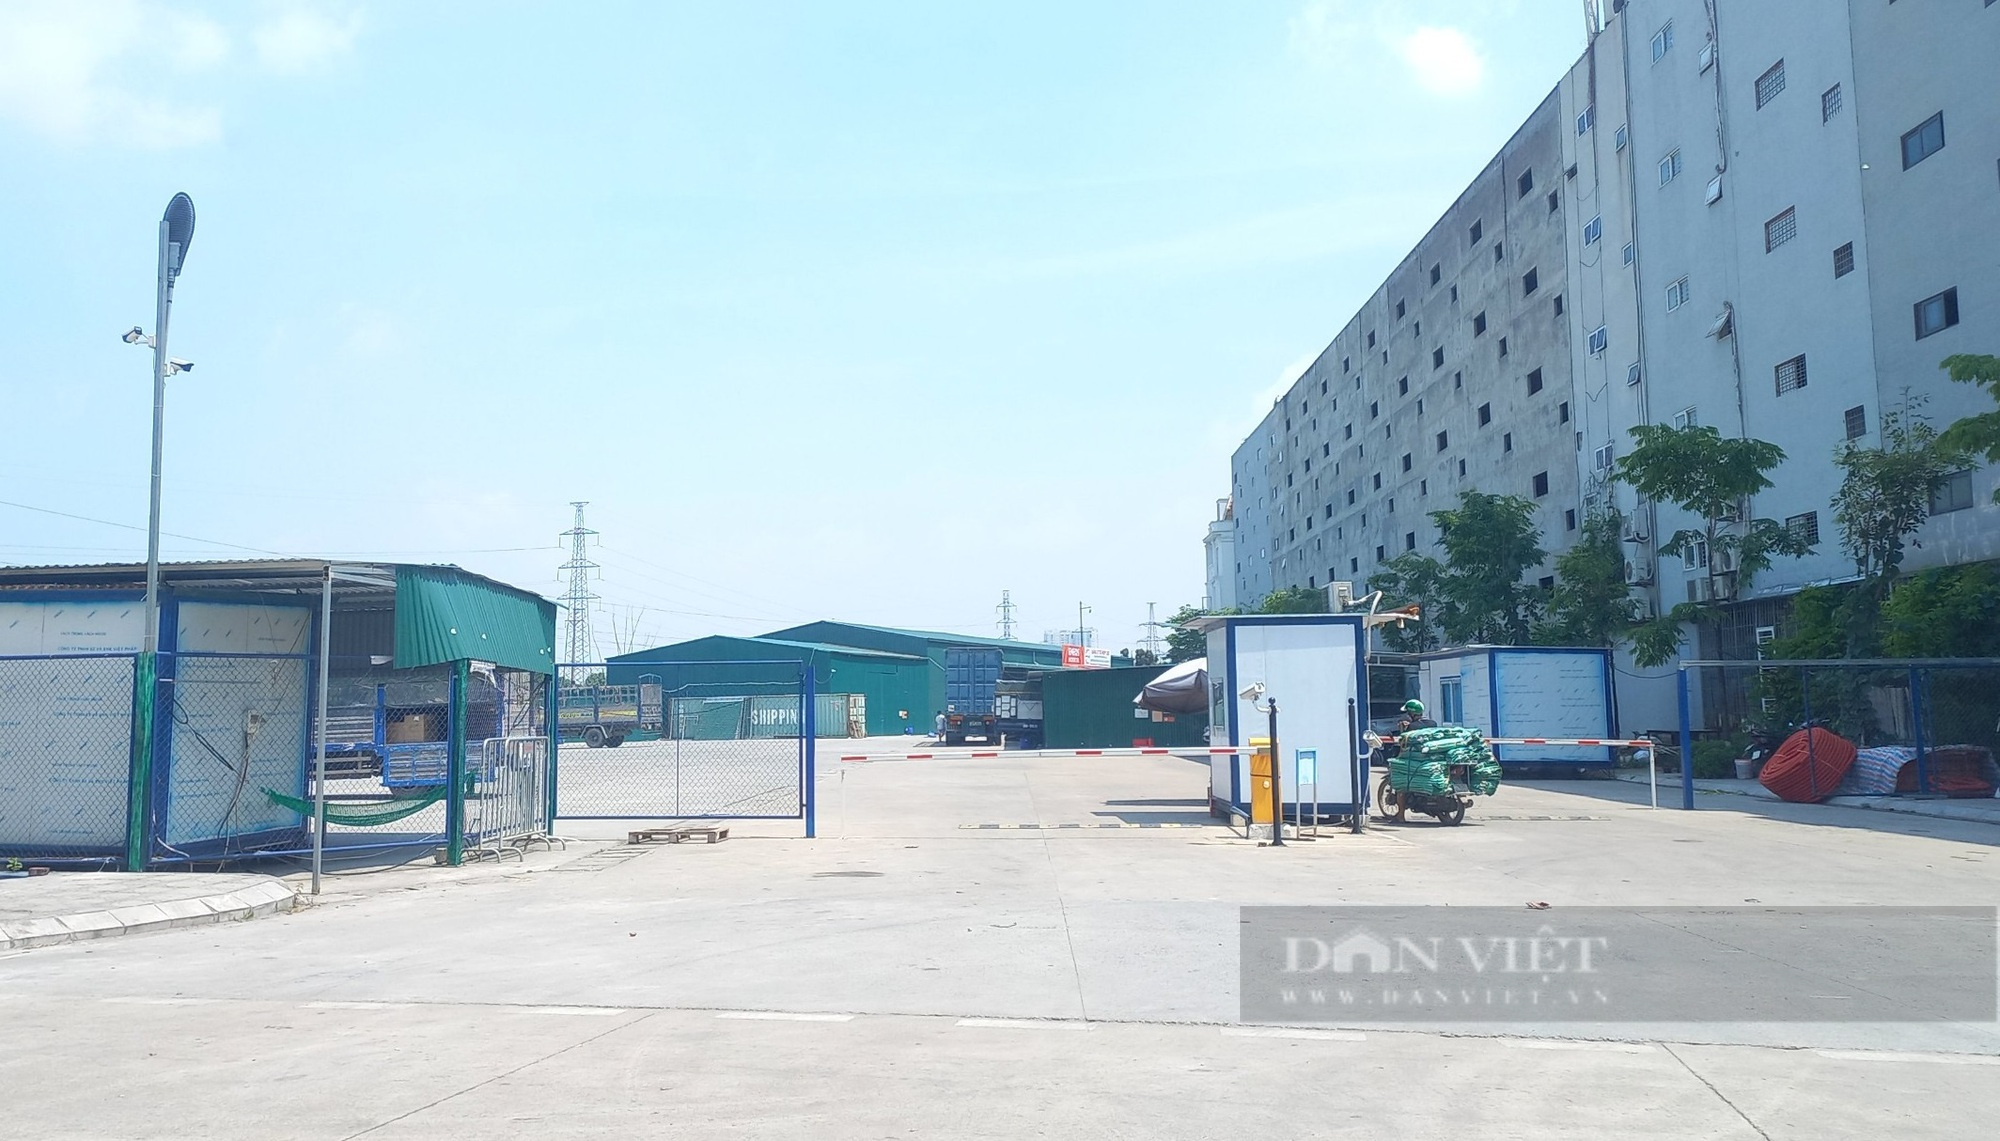 Hà Nội: Gara ô tô xây dựng trái phép hoạt động trên đất dự án tại quận Hà Đông - Ảnh 2.